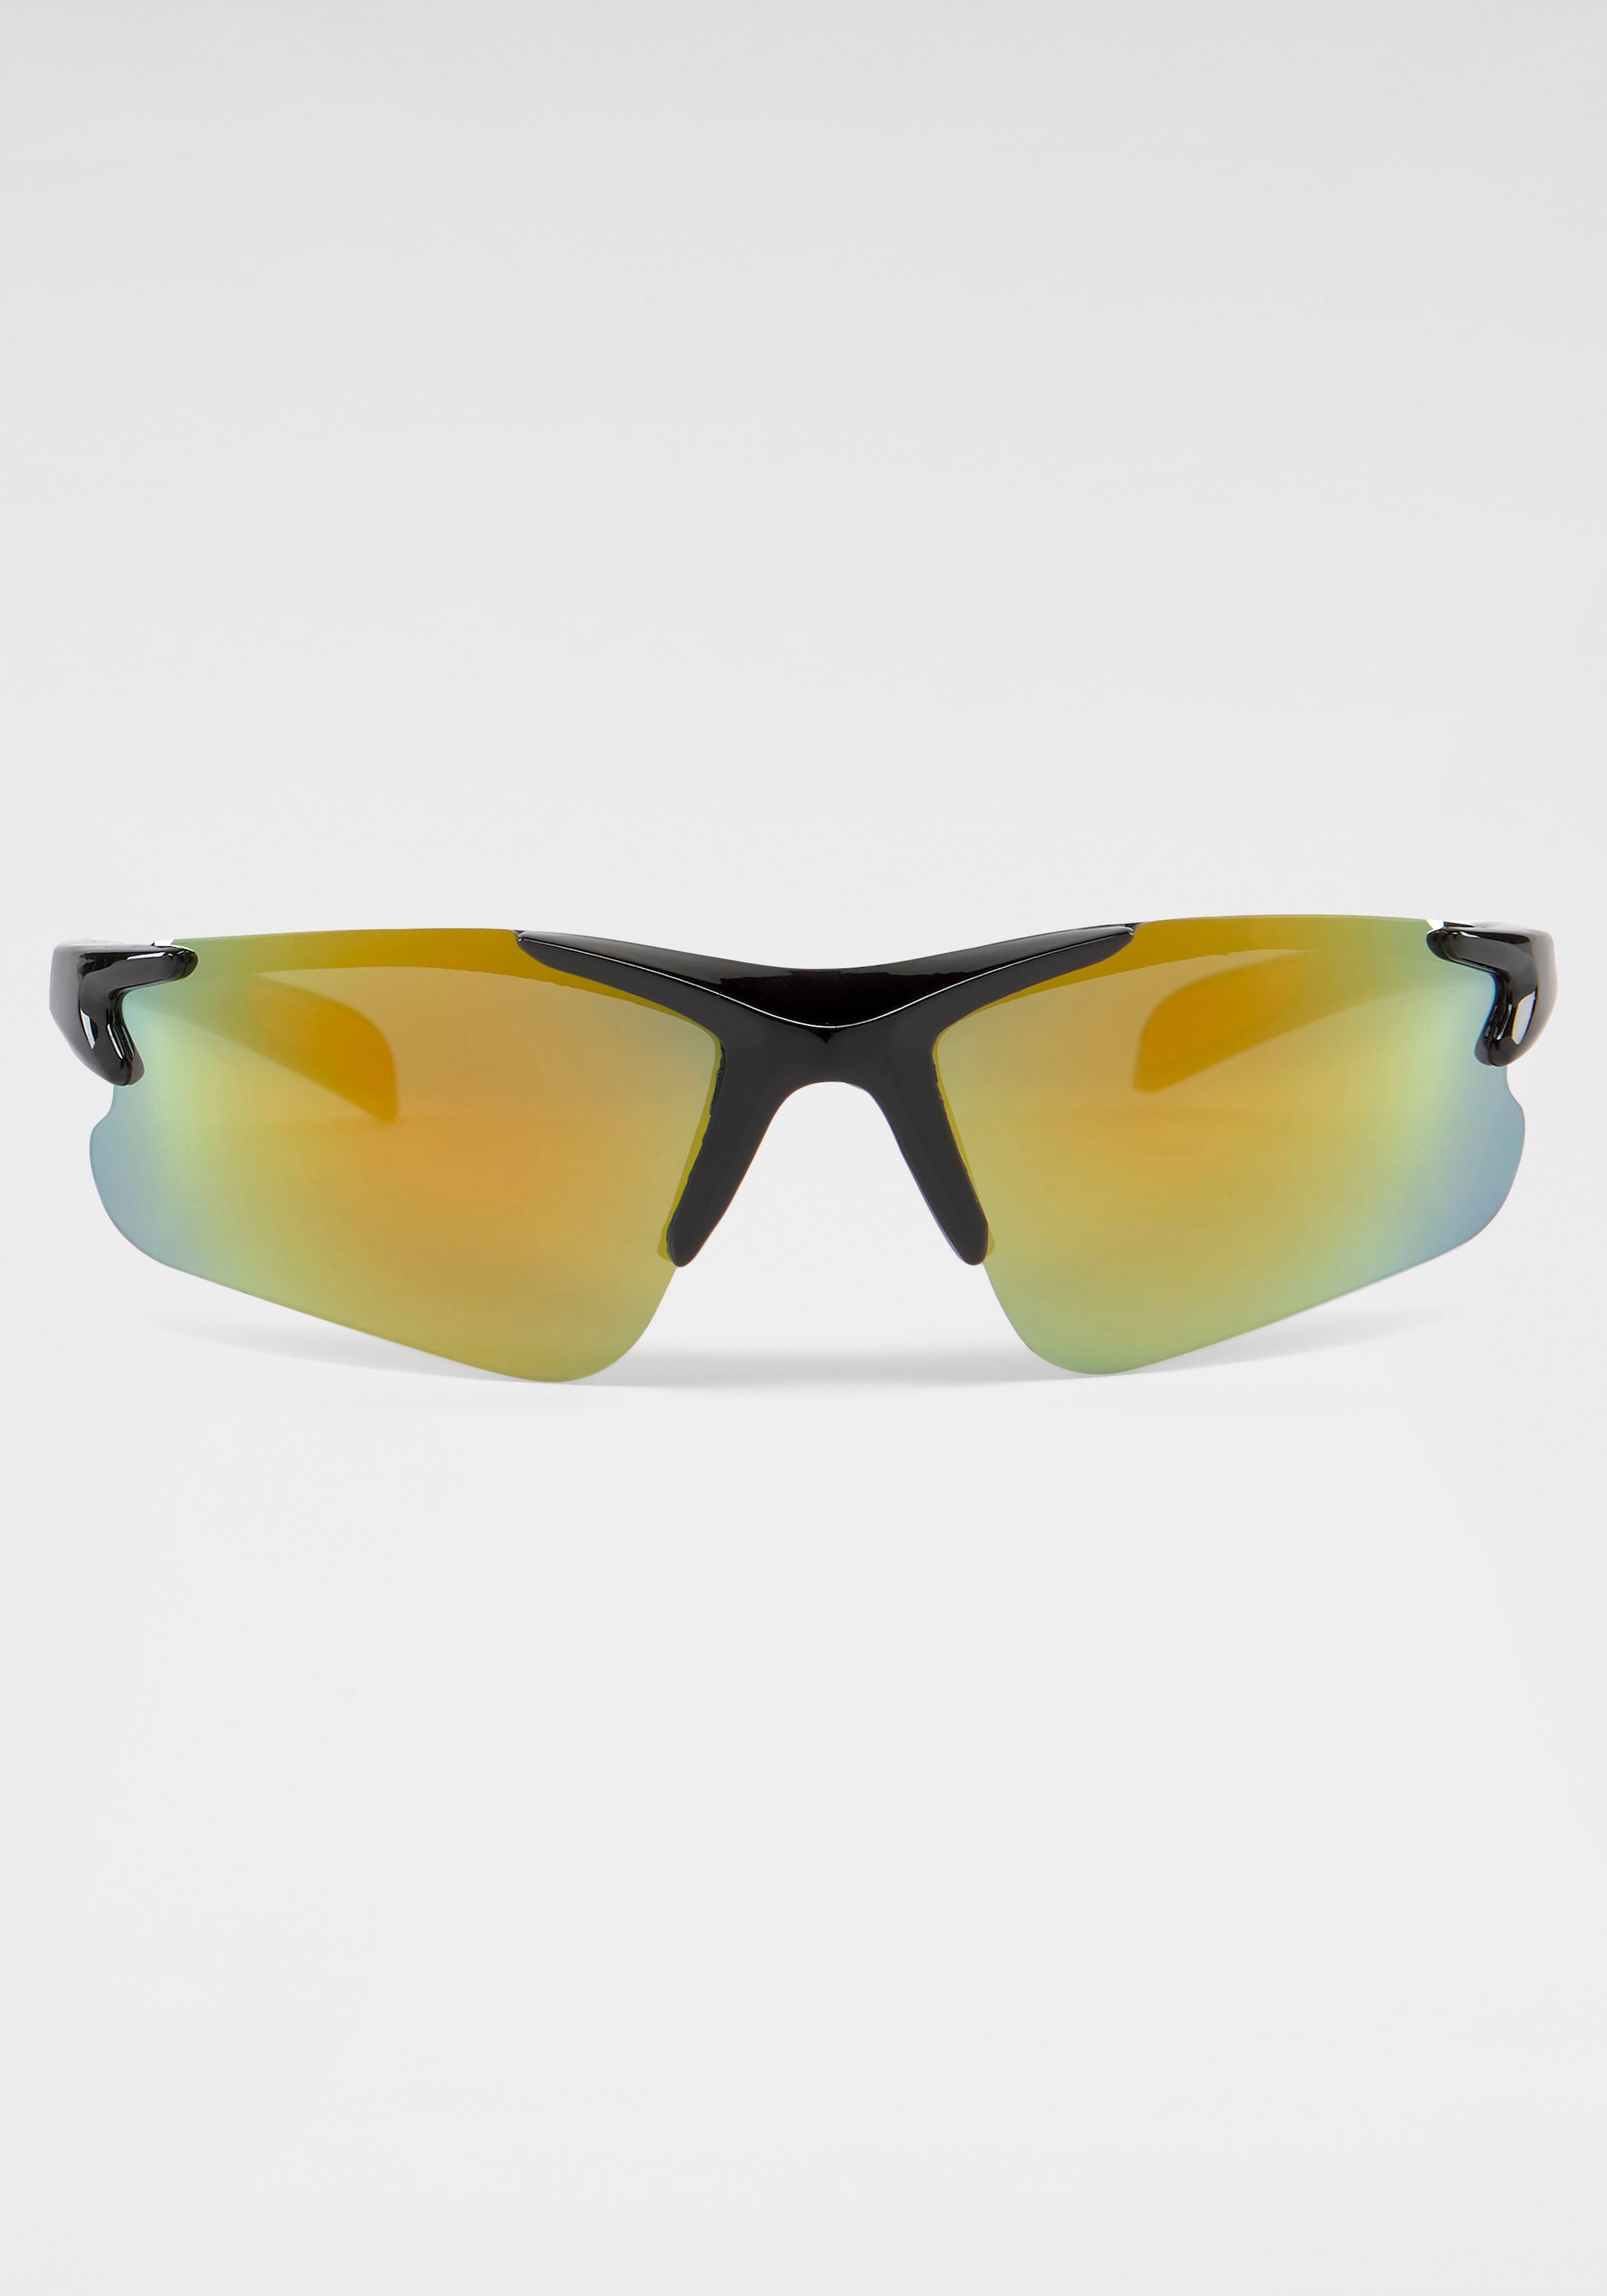 PRIMETTA Eyewear mit Sonnenbrille, verspiegelten online kaufen Gläsern